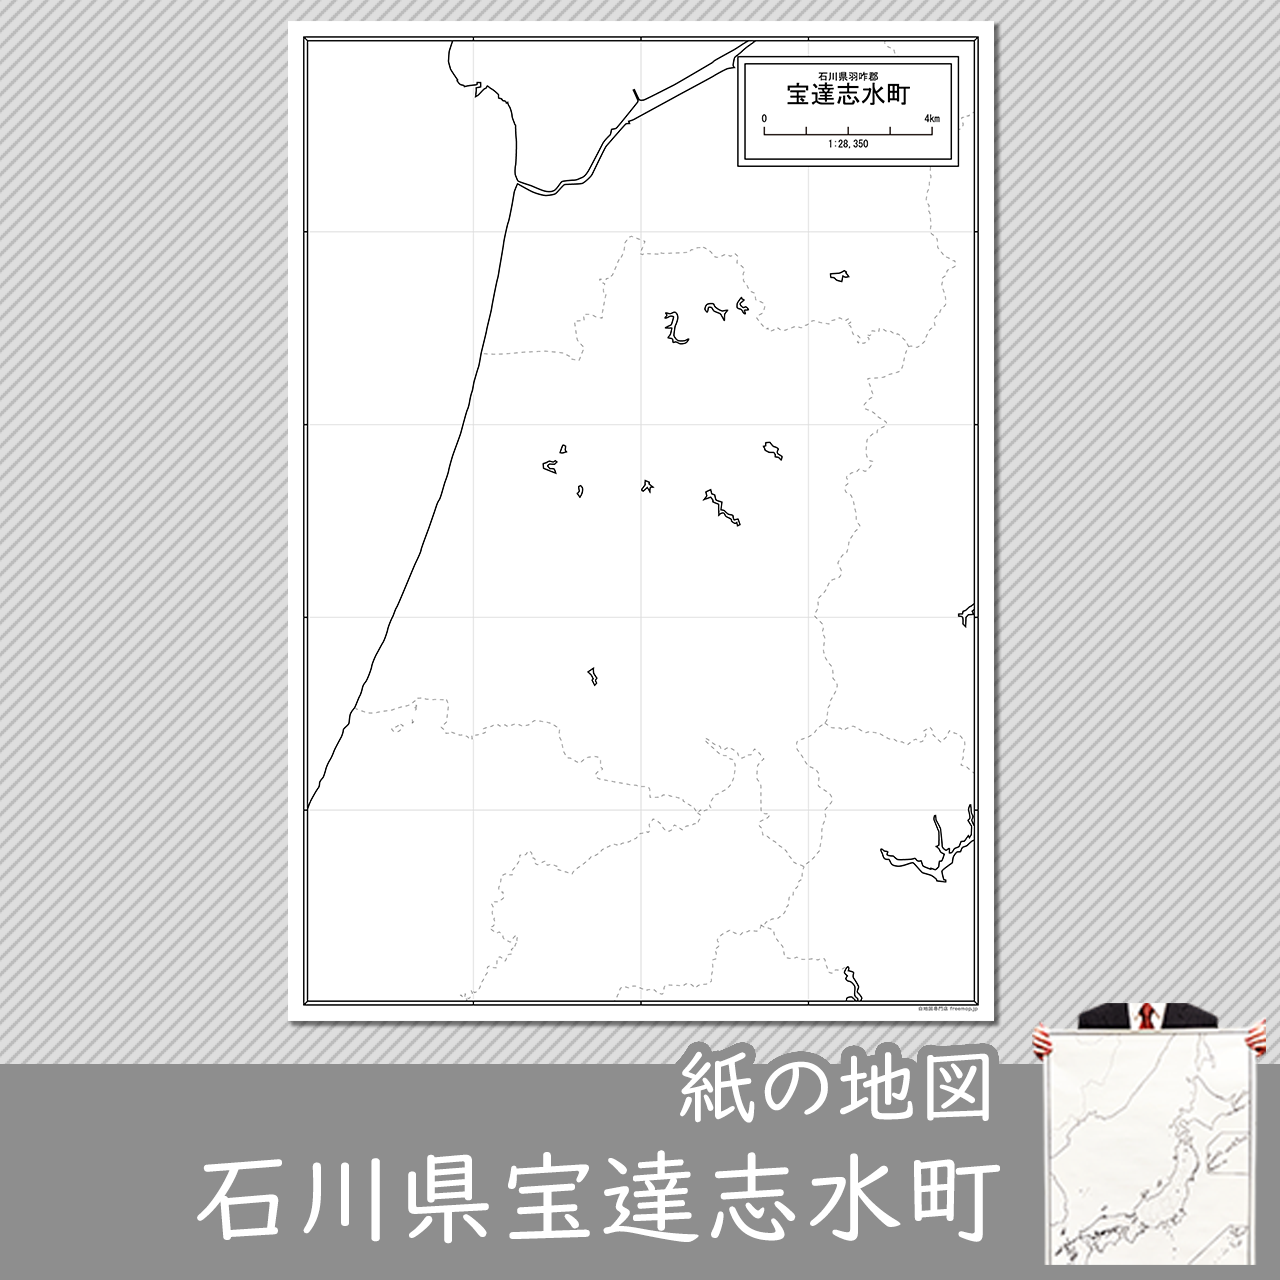 宝達志水町の紙の白地図